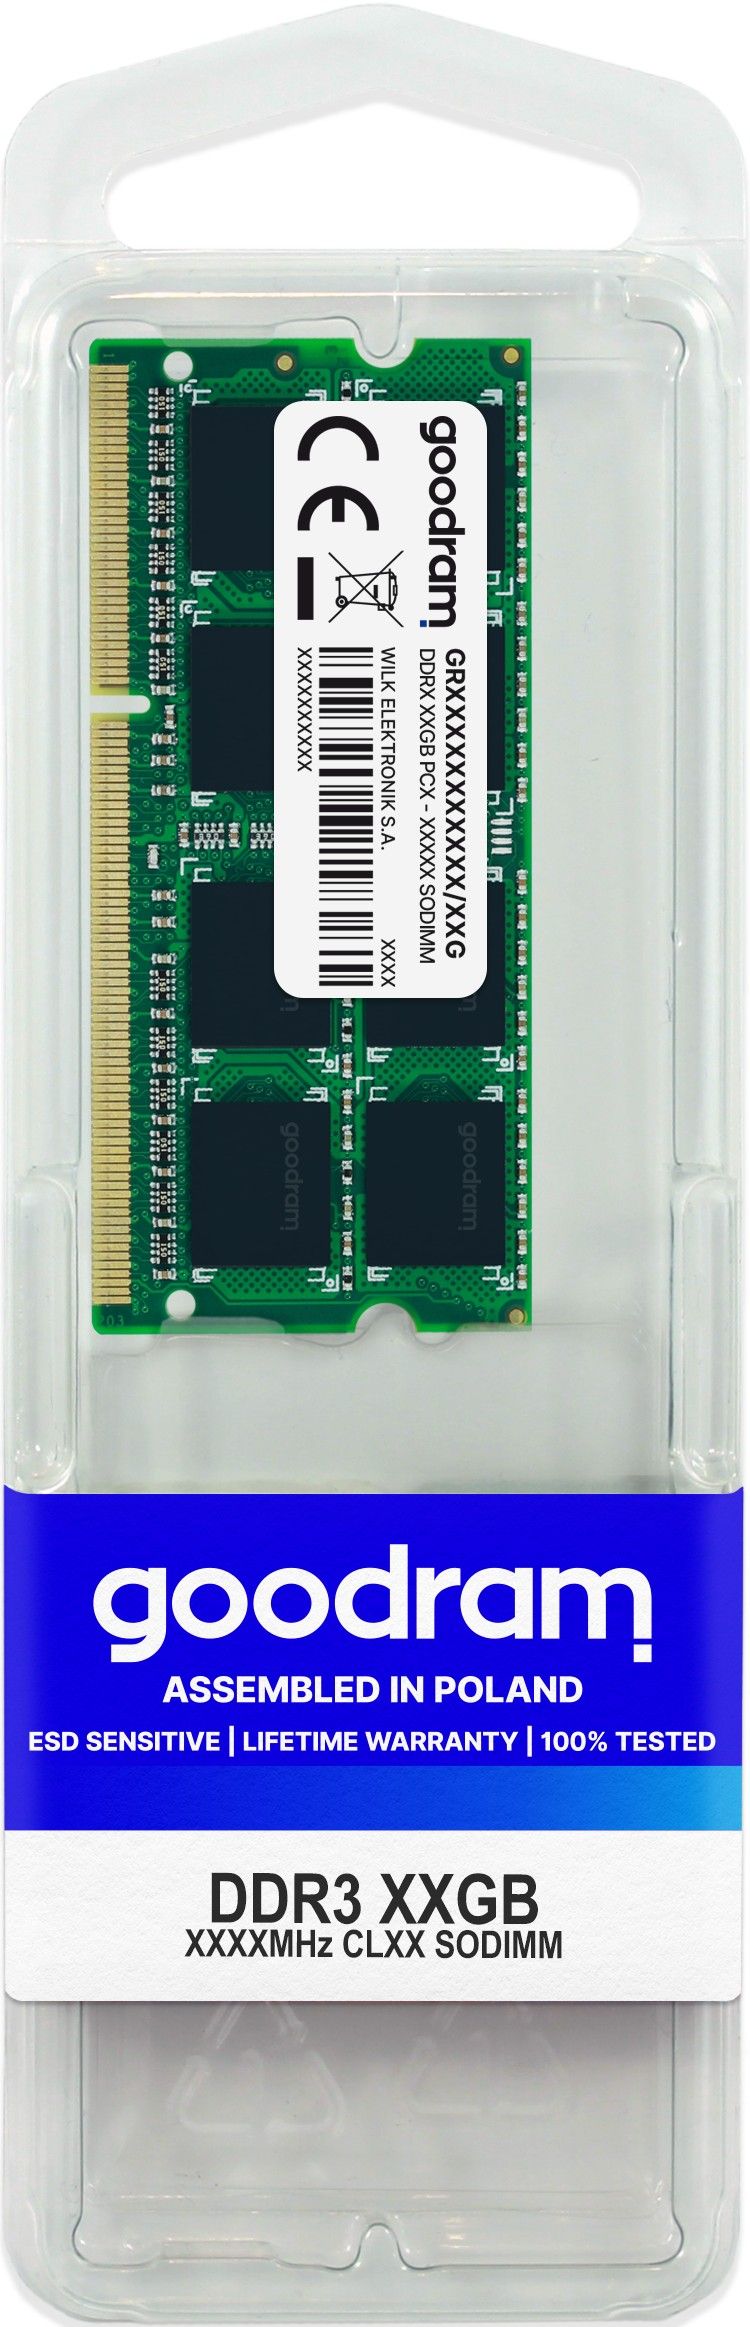 Goodram 8GB DDR3 SO-DIMM memory module 1333 MHz_2